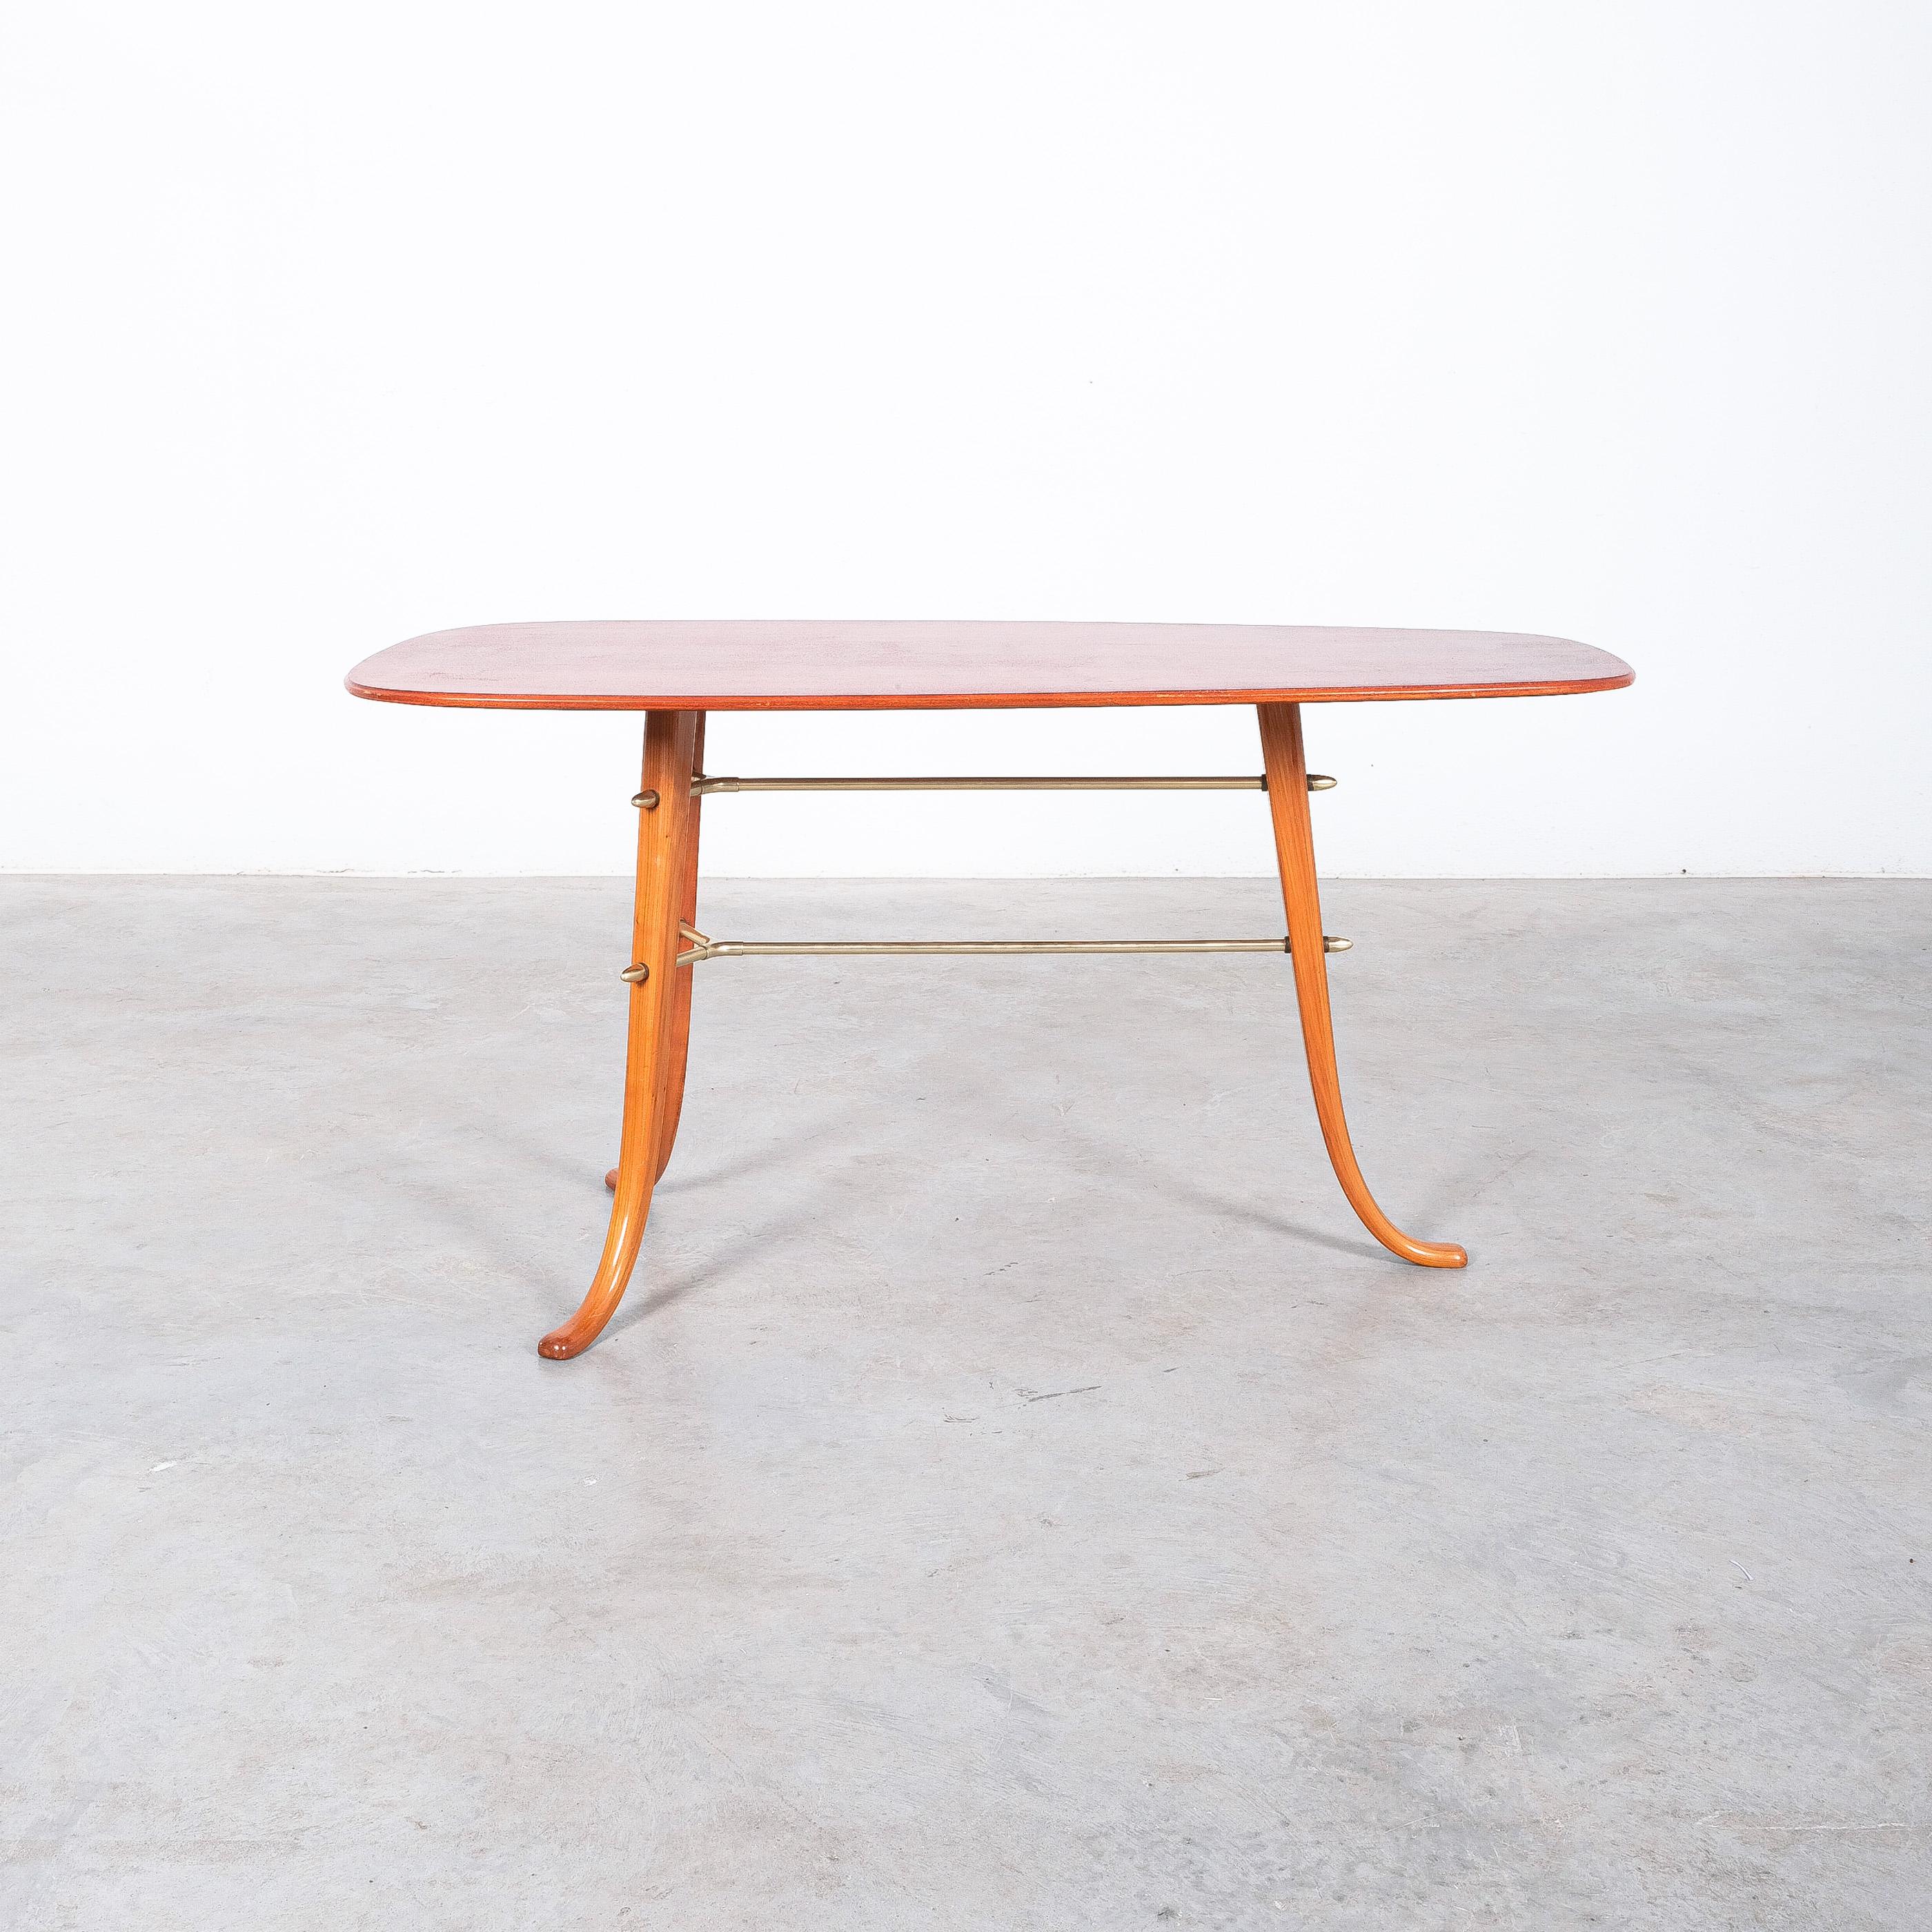 Bumerang-Tisch aus Holz in sehr gutem Zustand Italien, um 1955.

Stilvoller Tisch in sehr gutem Originalzustand aus Birkenholz und Messing; die Tischplatte ist mit einer speziellen Beschichtung versehen, um sie haltbarer zu machen. Bemerkenswert